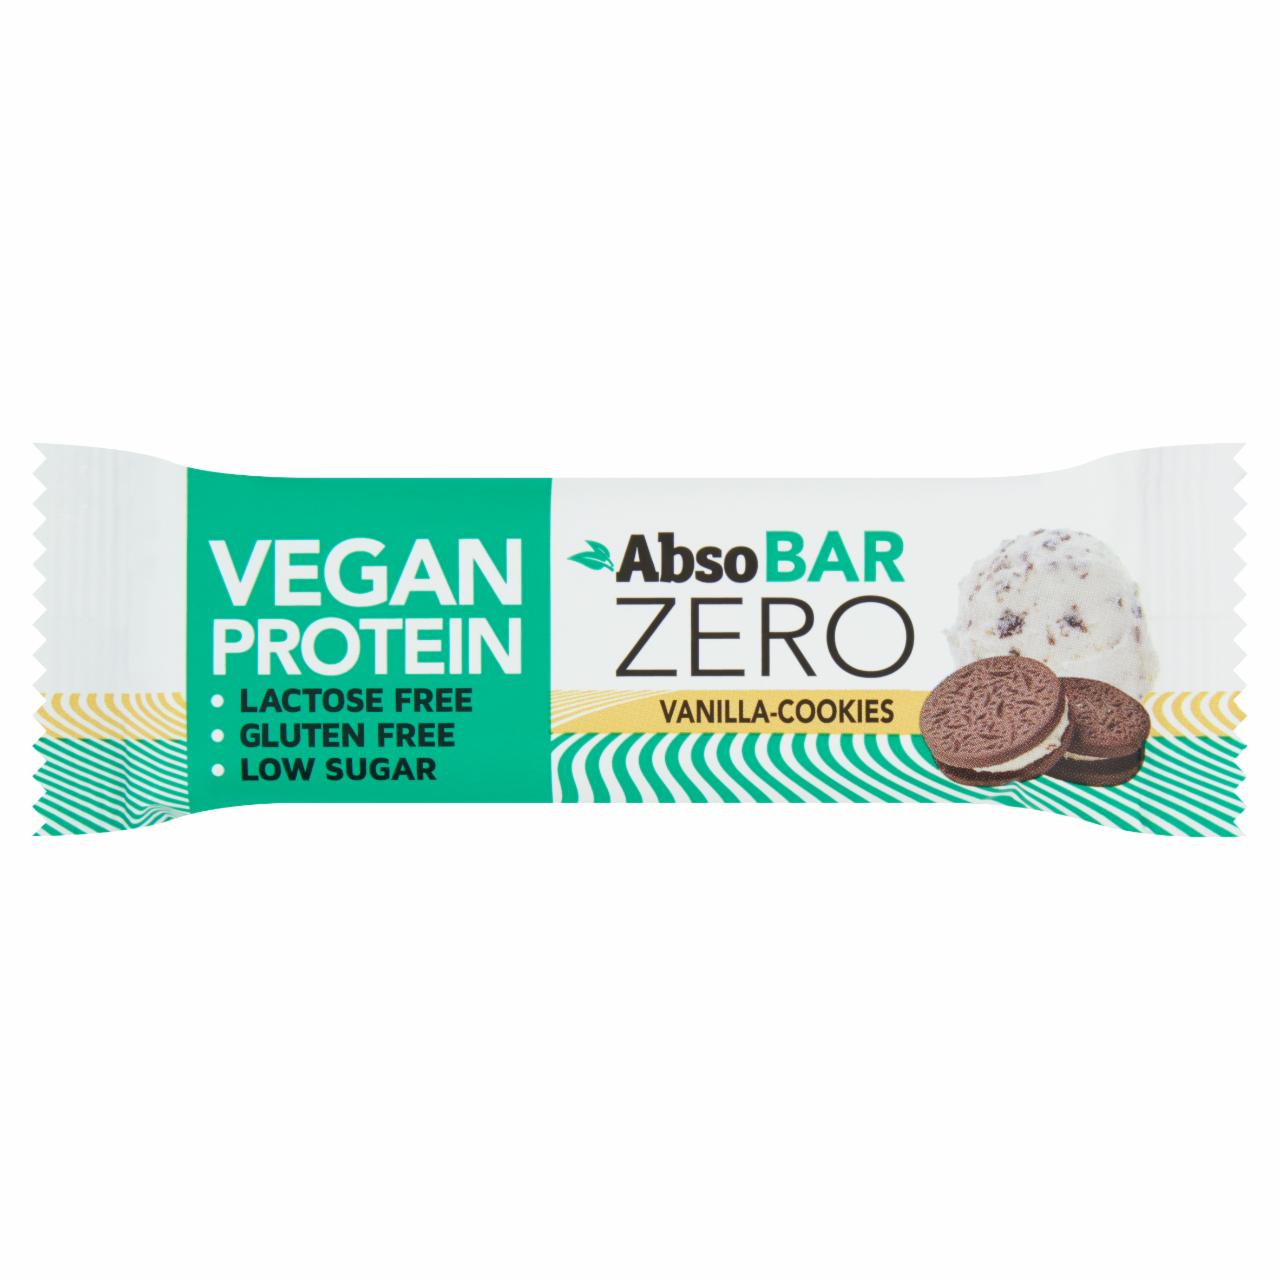 Képek - Absobar Zero glutén- és laktózmentes, vaníliás keksz ízesítésű, magas fehérjetartalmú szelet 40 g